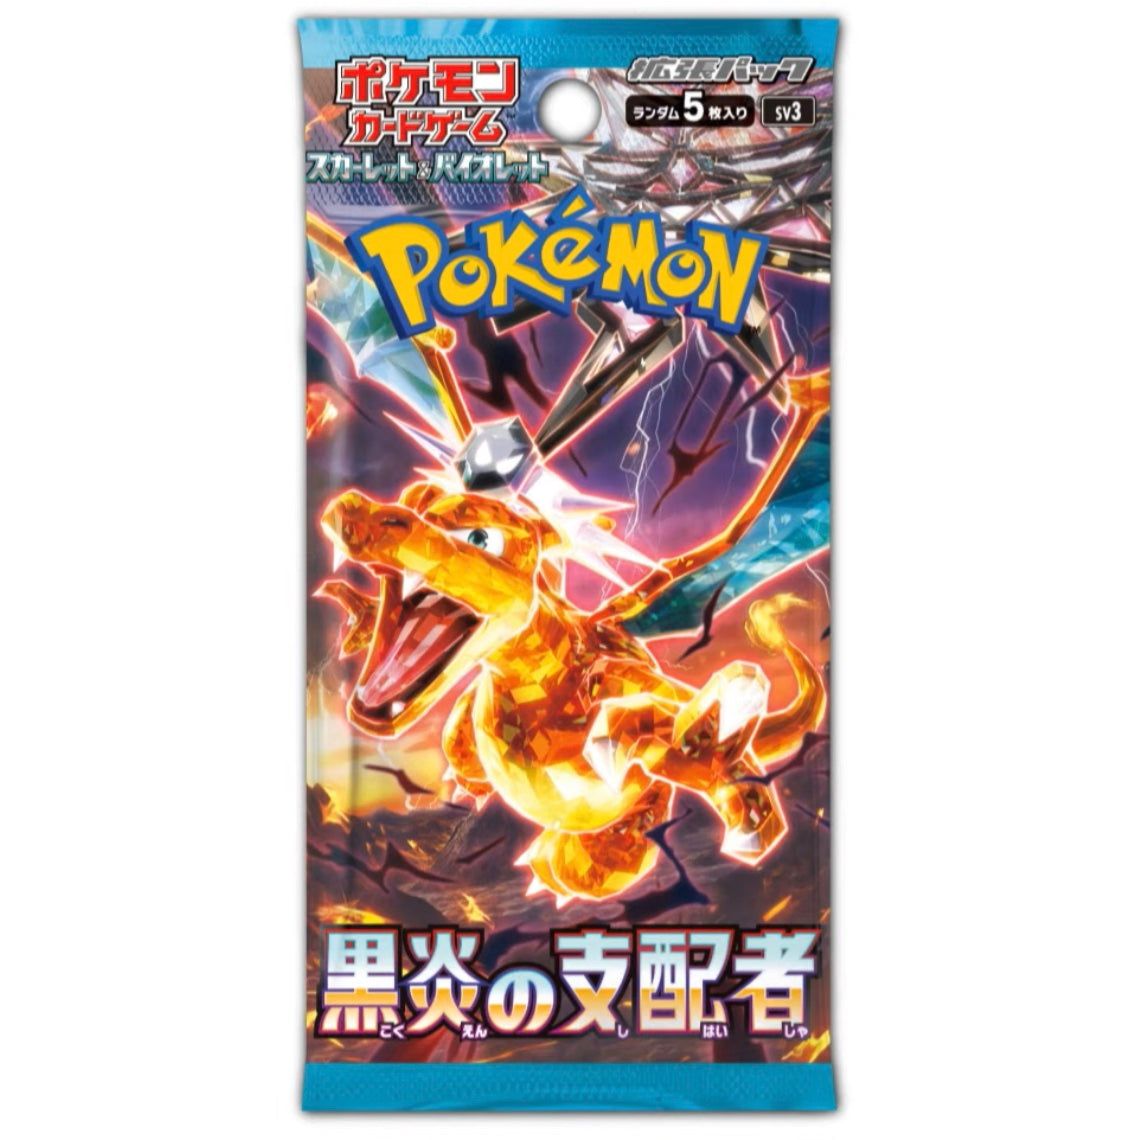 Pokémon TCG: Scarlet & Violet SV3 – Ruler of the Black Flame Booster Box (Japanese)